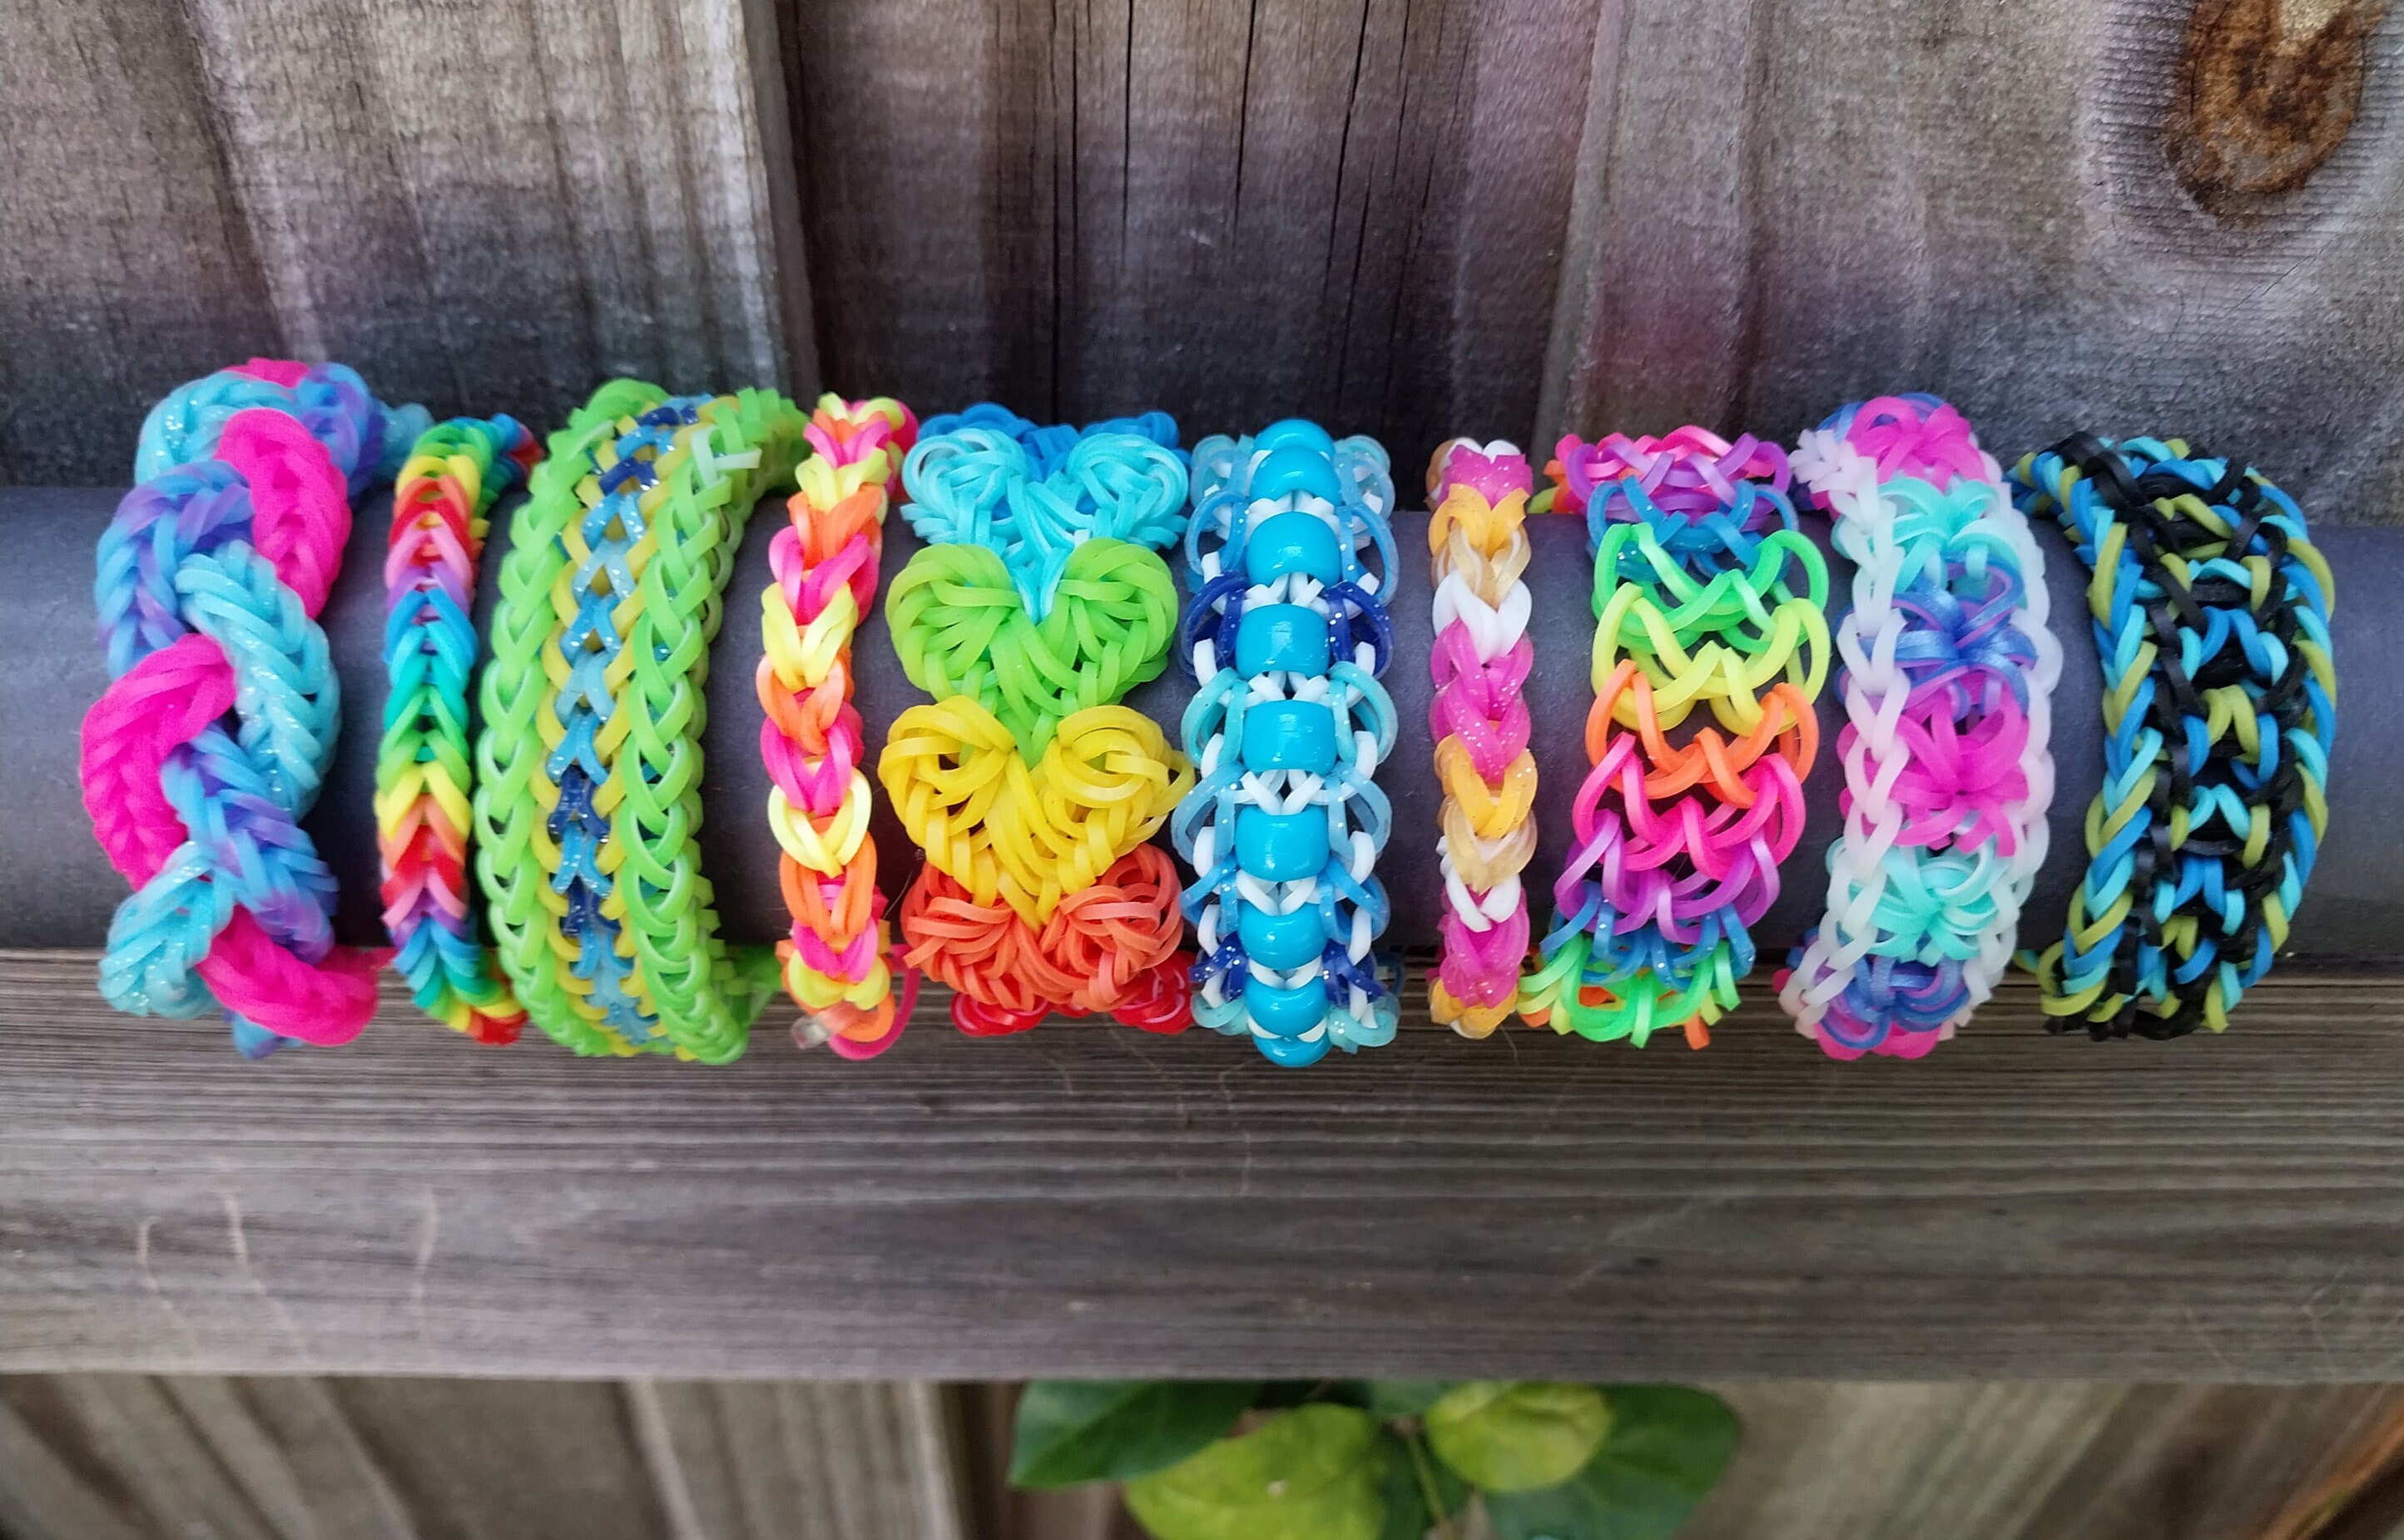 Silly Charms Rainbow Loom Bracelet Y5-F416-2 - FOLUCK-Novelty toys